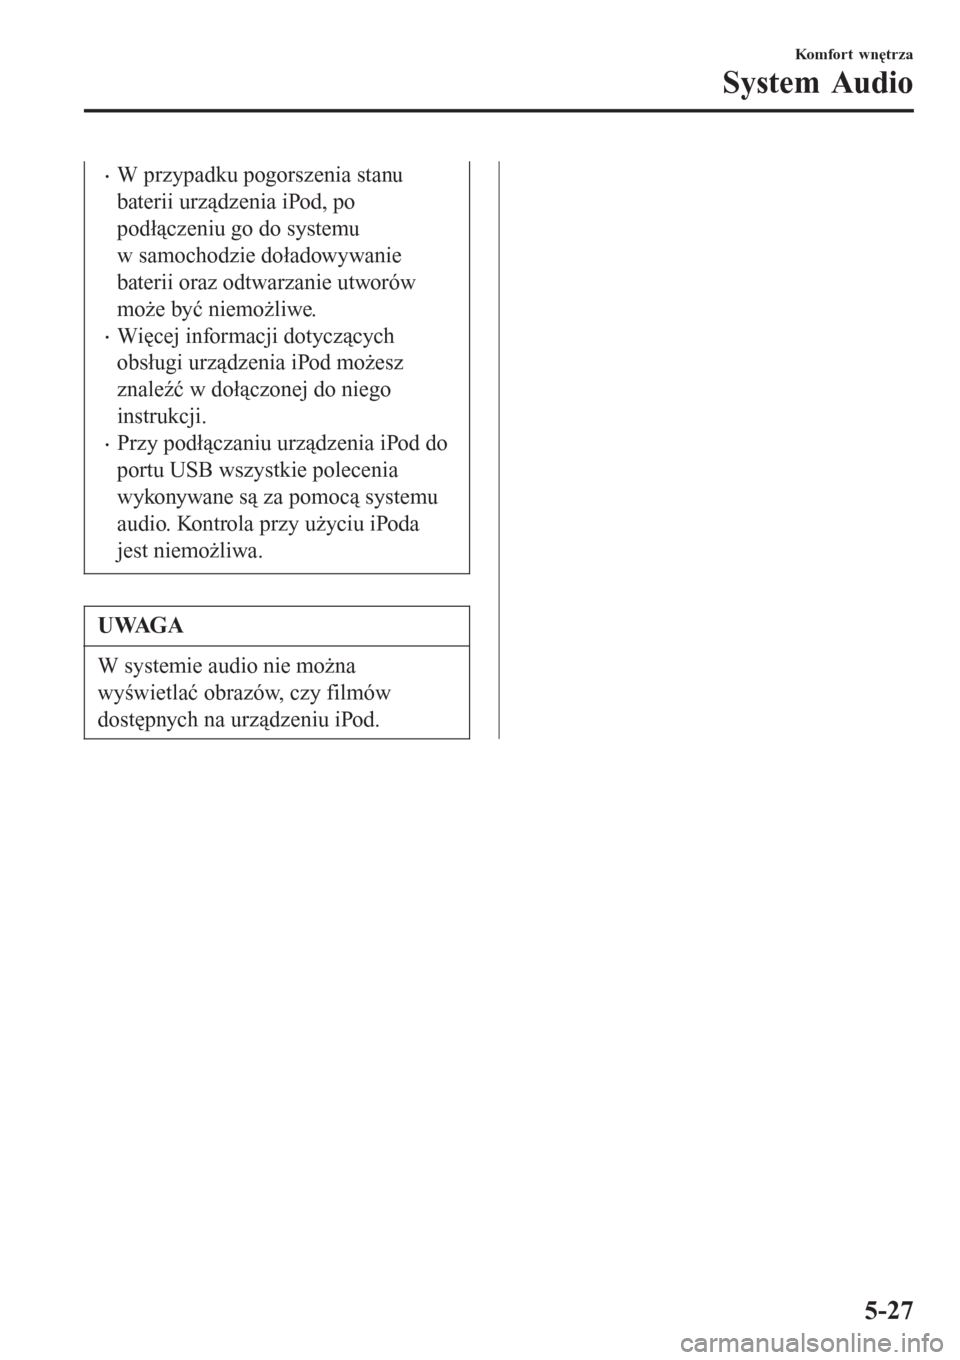 MAZDA MODEL MX-5 2015  Instrukcja Obsługi (in Polish) •W przypadku pogorszenia stanu
baterii urządzenia iPod, po
podłączeniu go do systemu
w samochodzie doładowywanie
baterii oraz odtwarzanie utworów
może być niemożliwe.
•Więcej informacji d